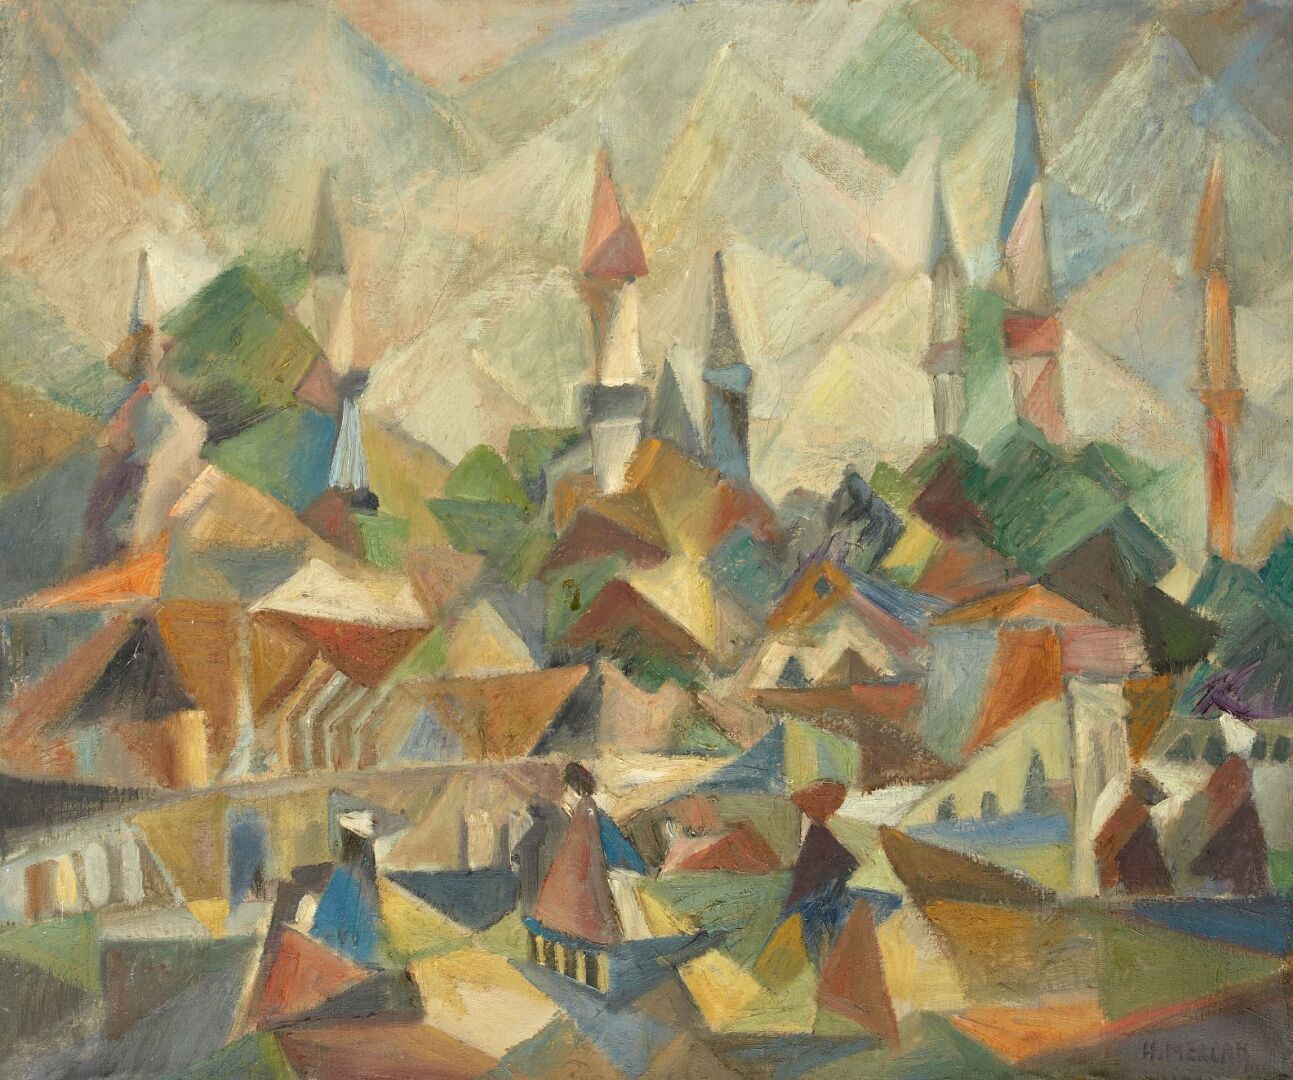 Null 哈桑-胡鲁西-梅尔坎（1913-1988年）

土耳其村

布面油画，左下角有签名

54 x 65厘米